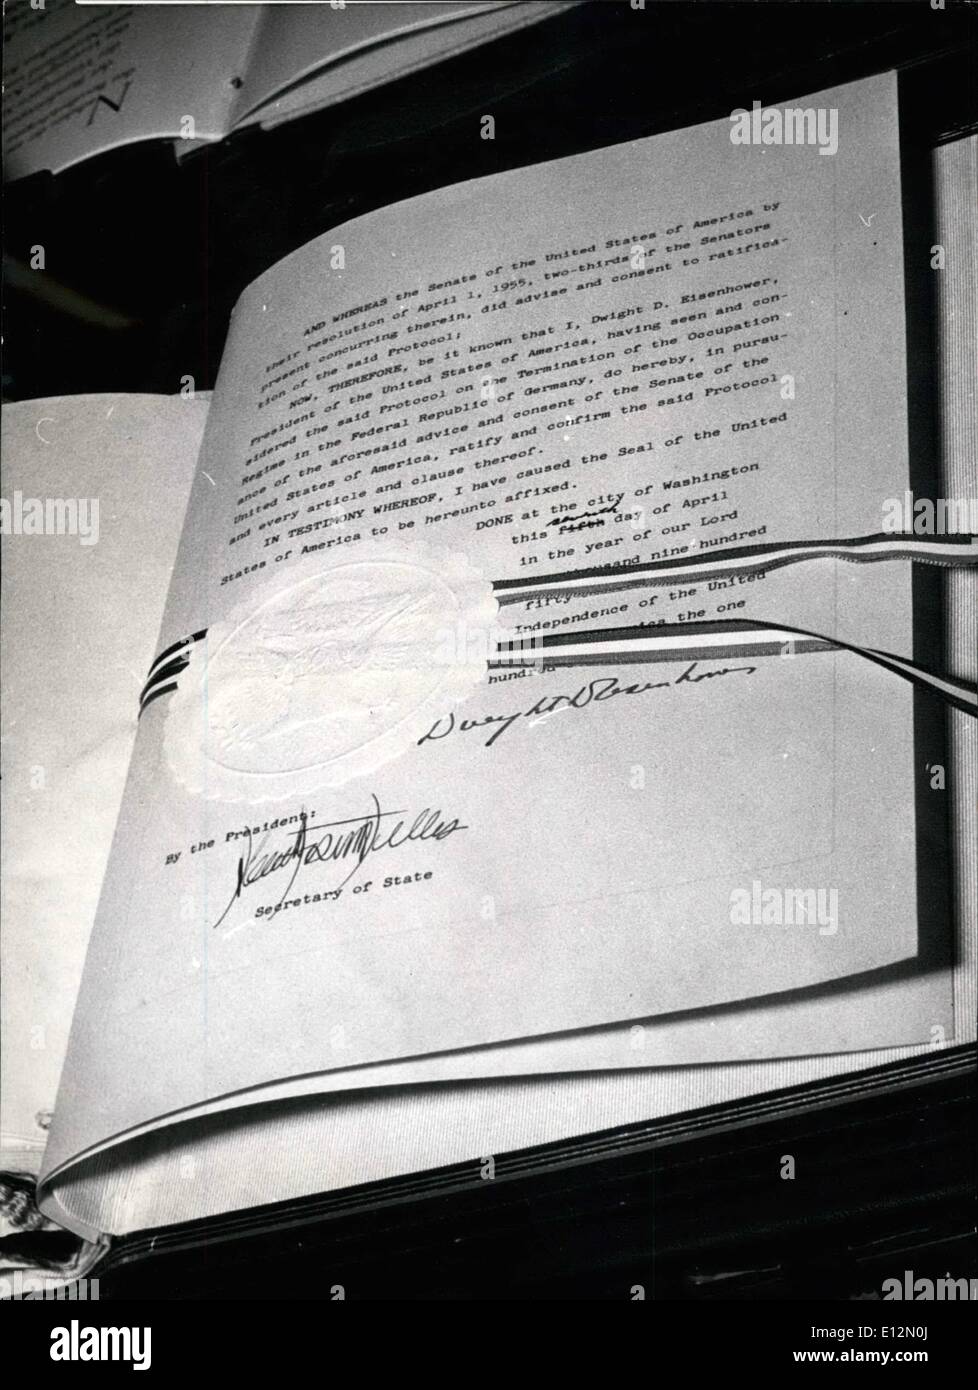 Febbraio 24, 2012 - nella foto è il documento firmato dal presidente americano Dwight Eisenhower. Questo documento si conclude l'occupazione americana della Germania. Jacky Narp vince il 1959 Macelleria Oscar Foto Stock